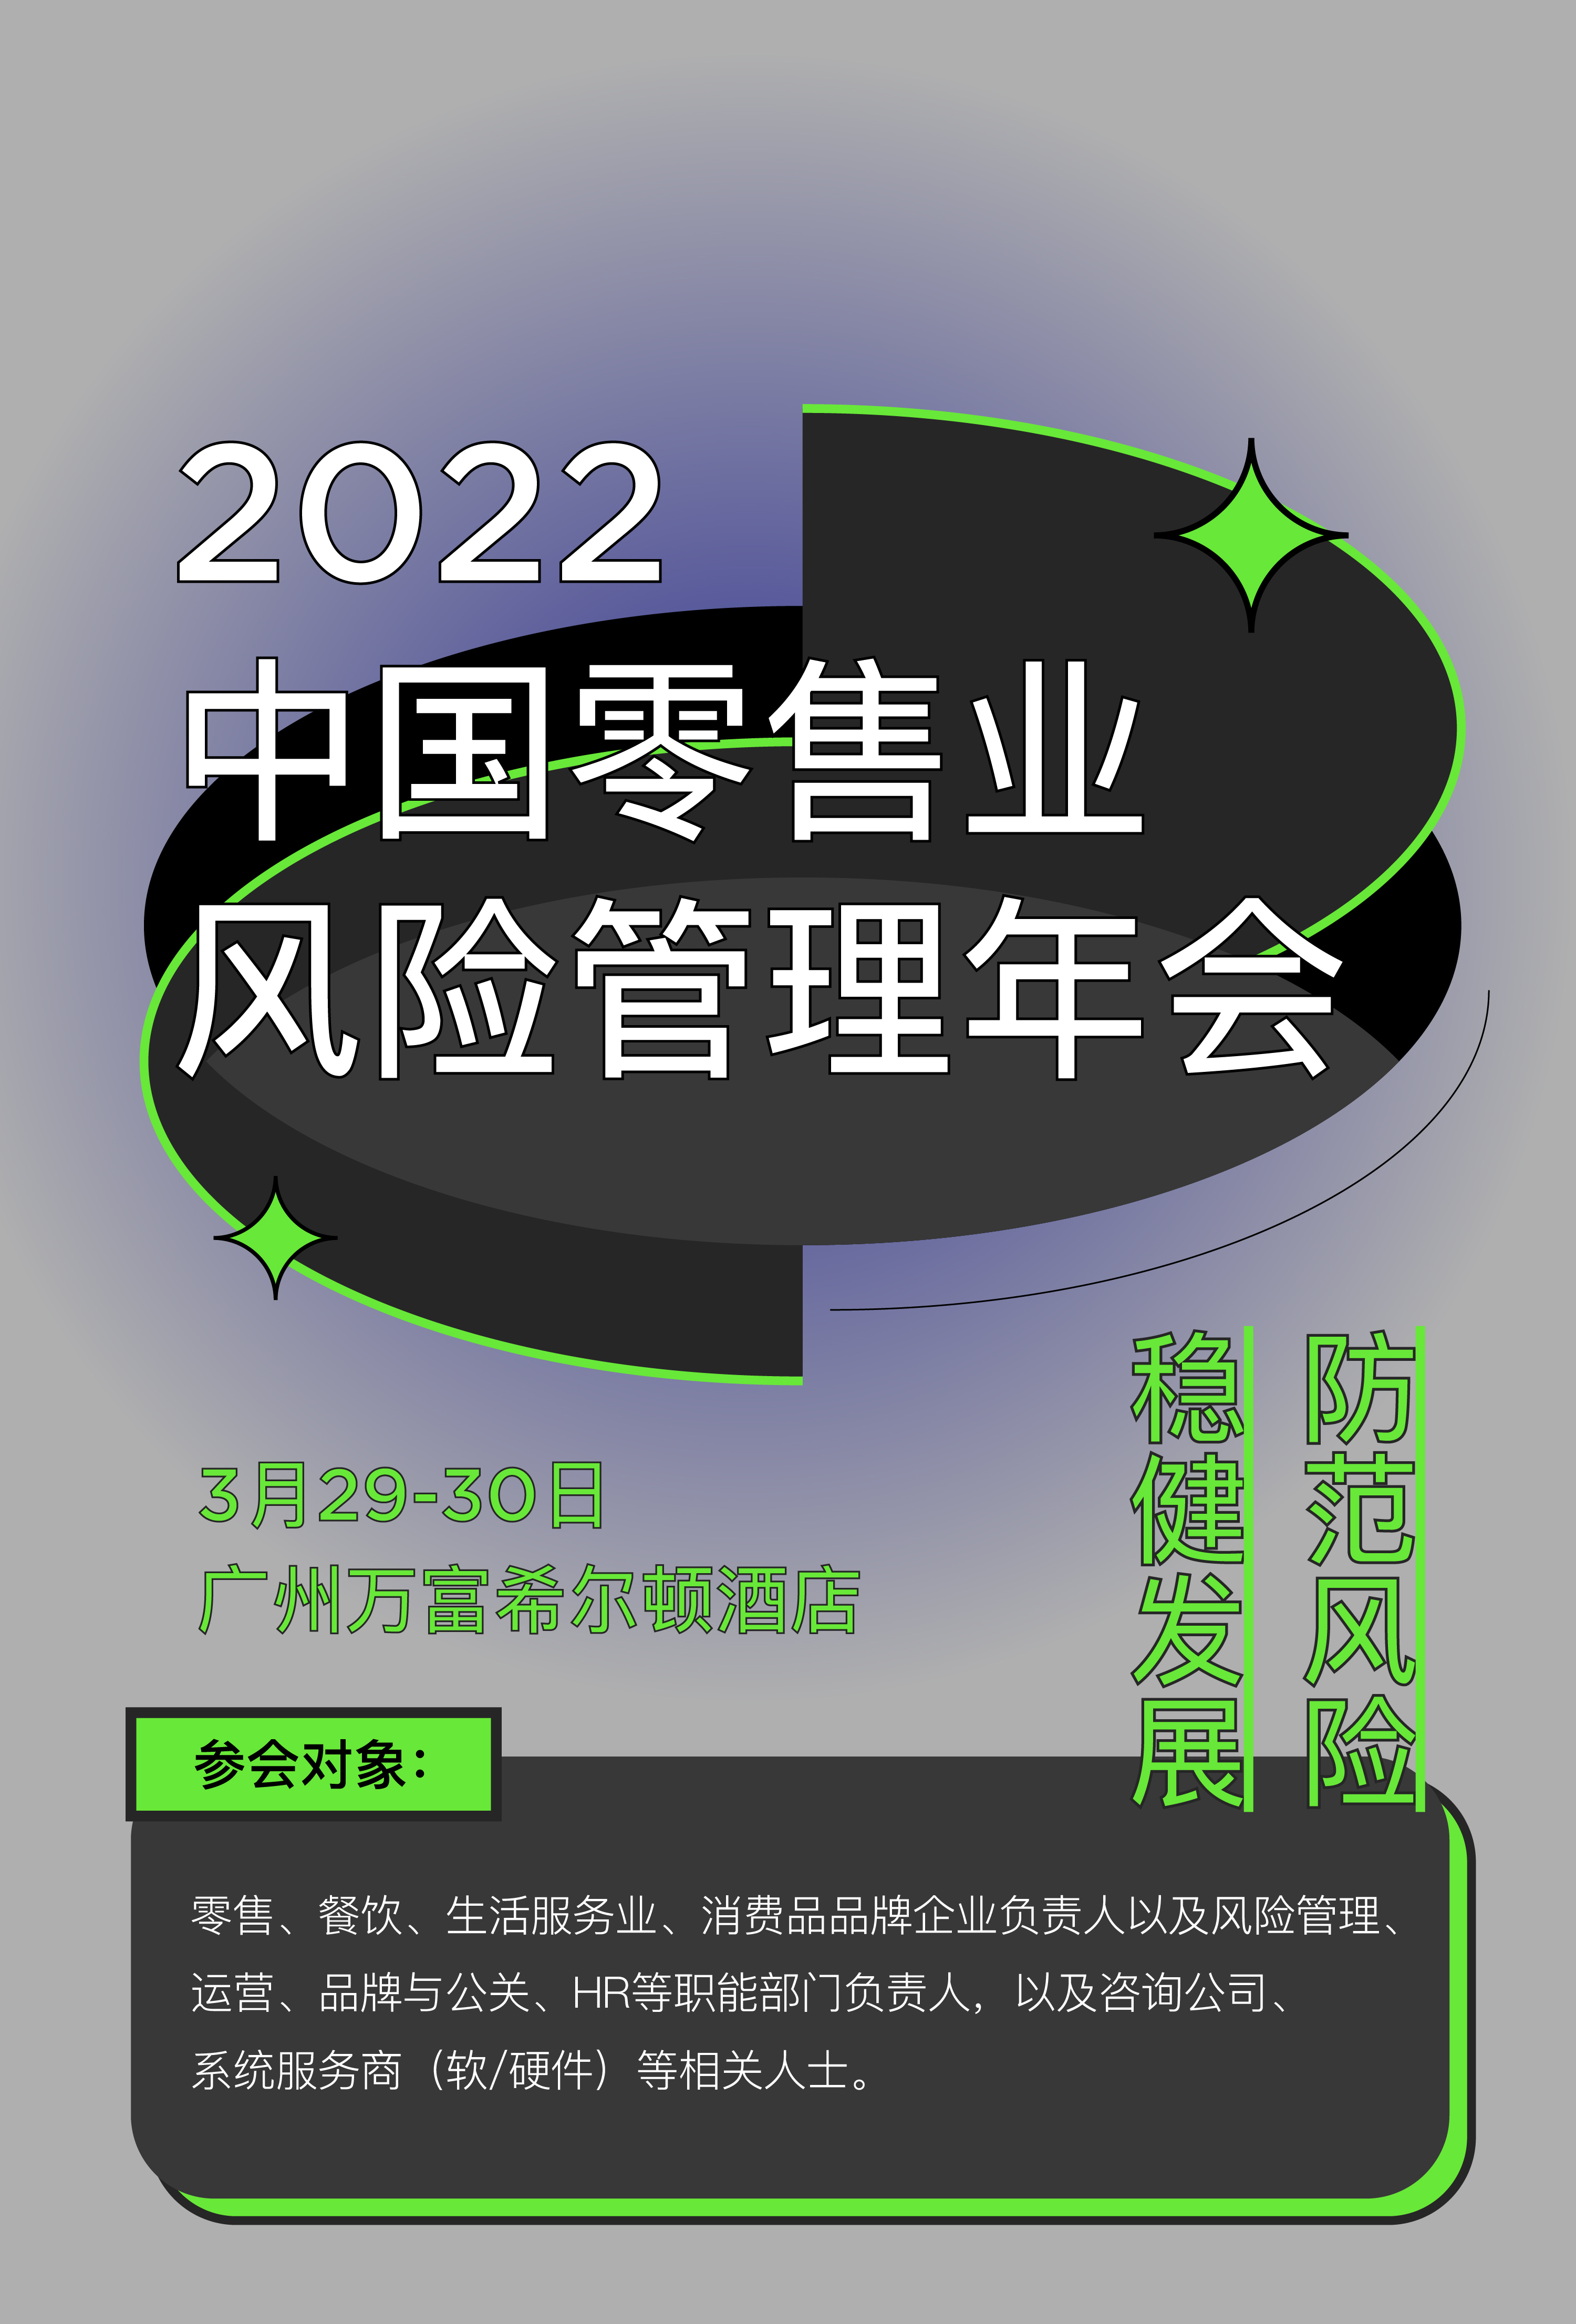 2022中国零售业风险管理年会&供应链年会